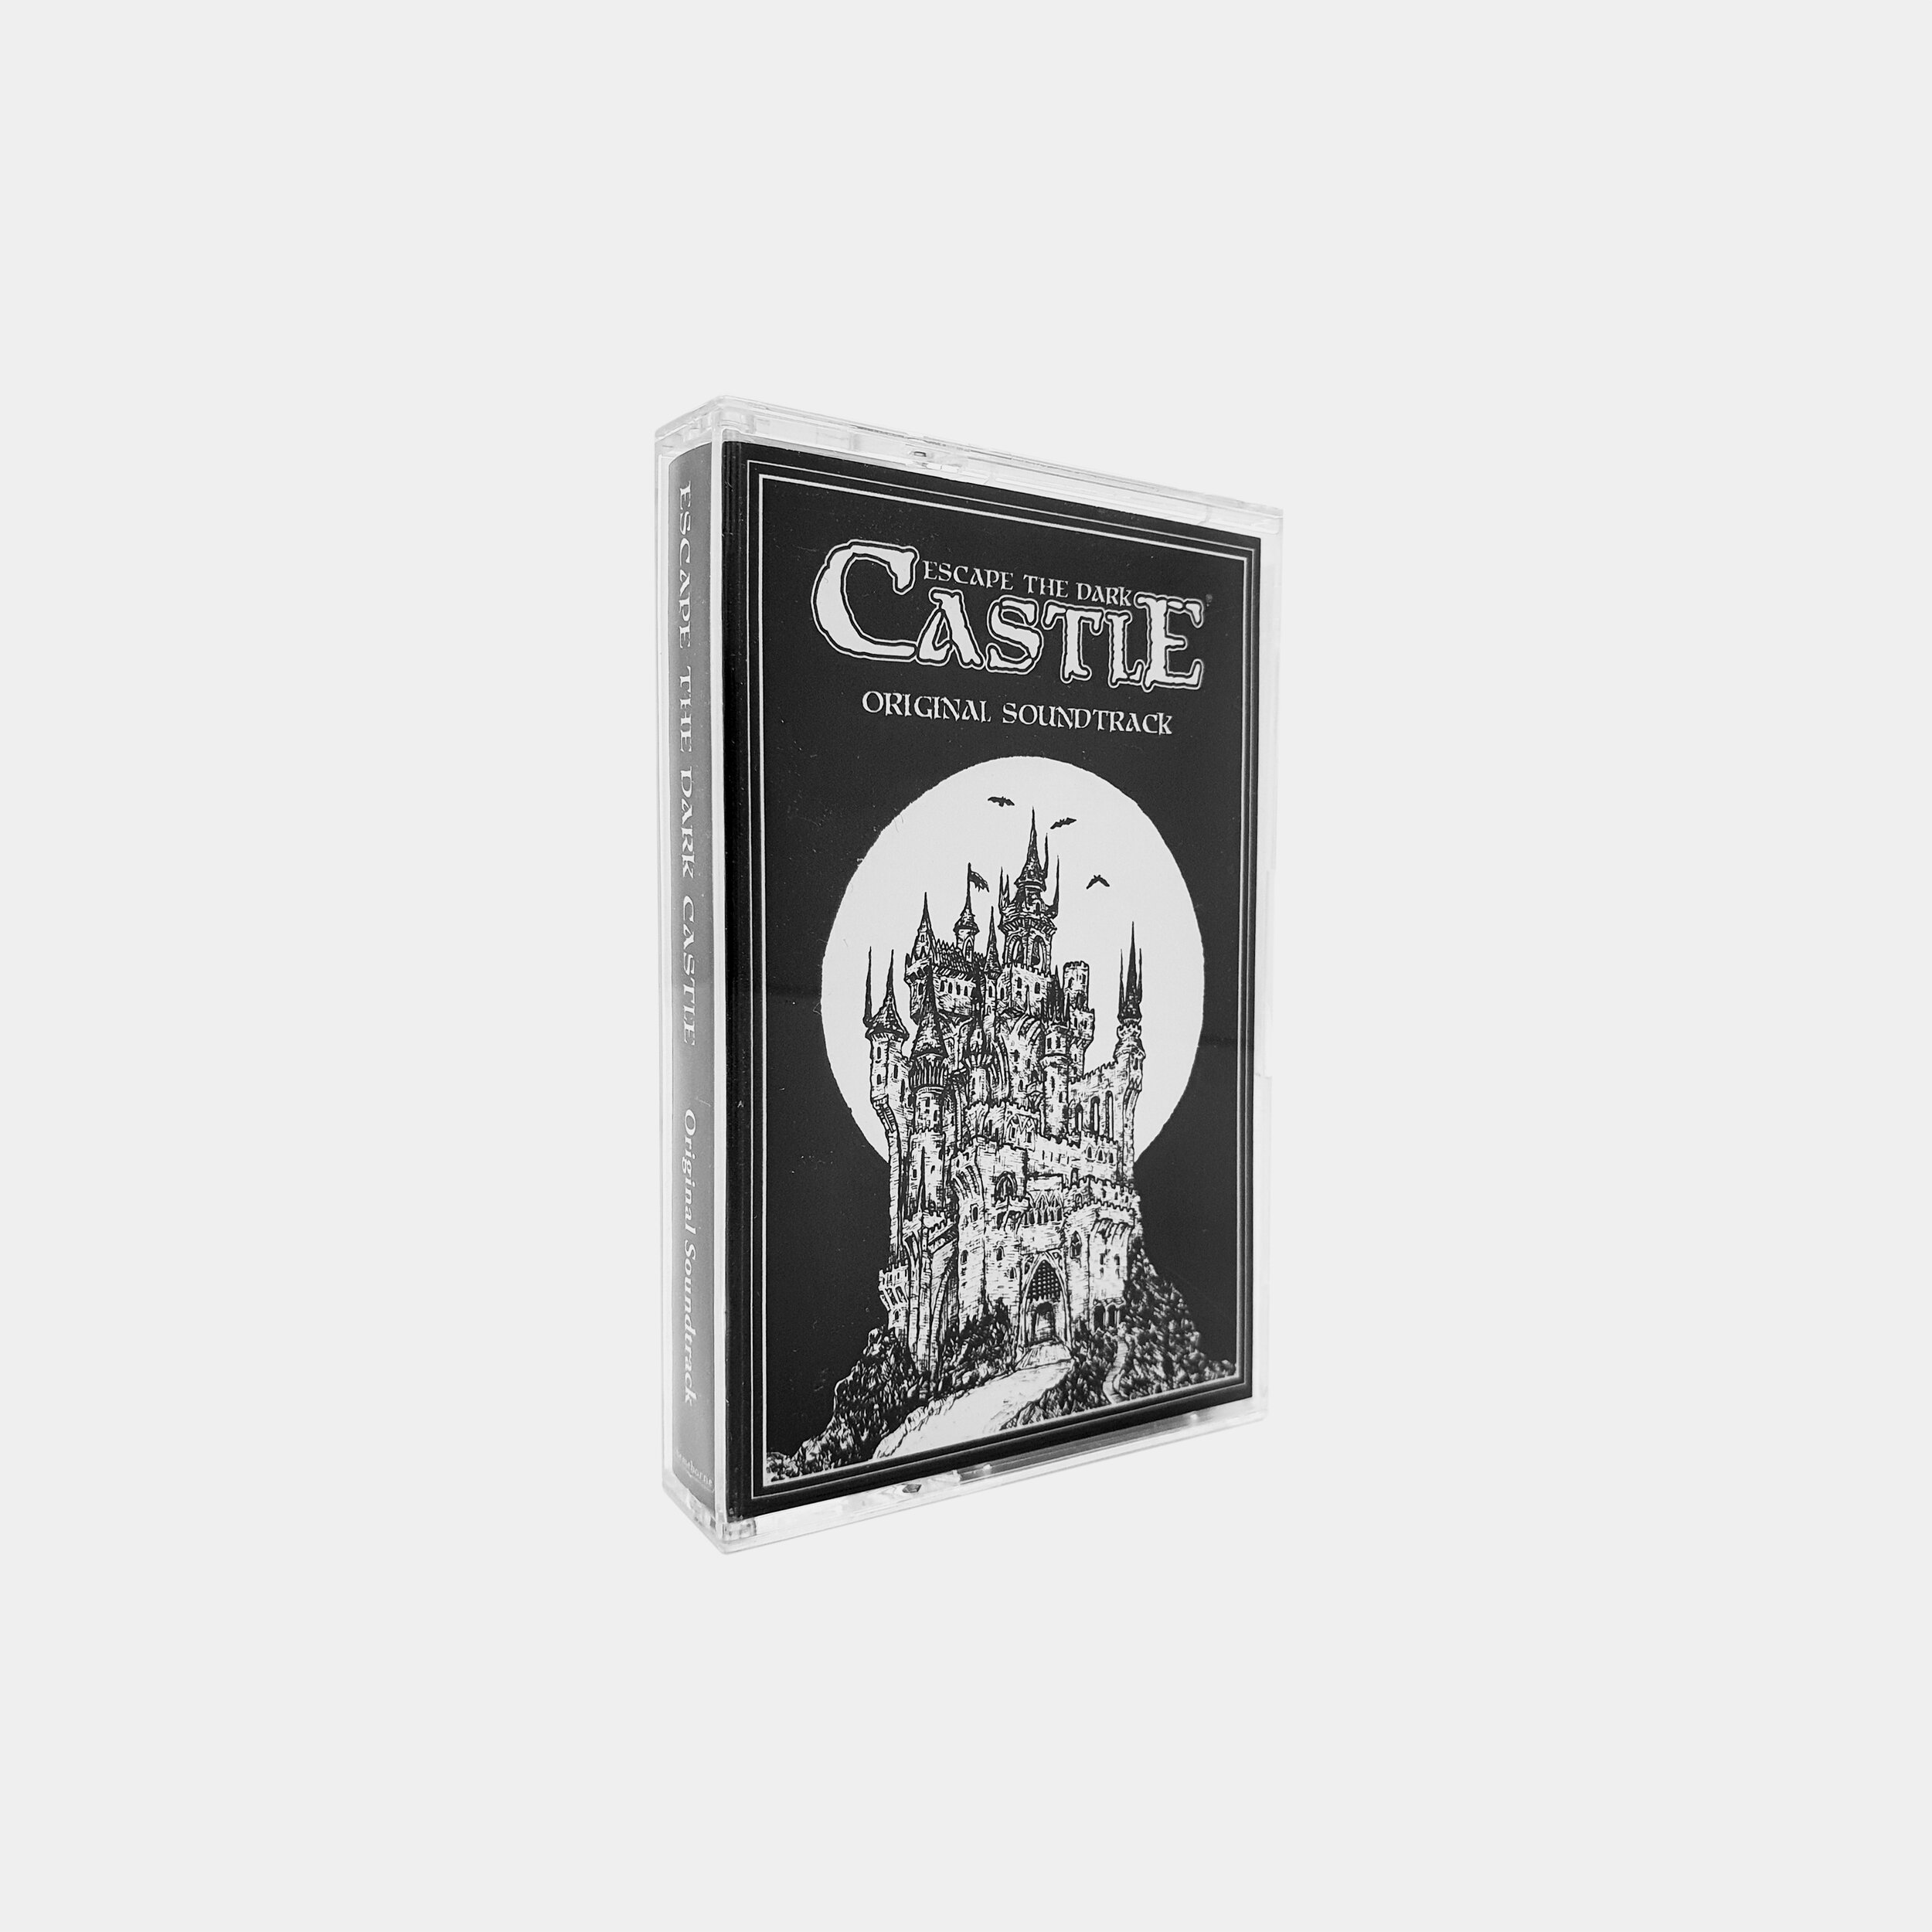 Escape The Dark Castle Soundtrack On Cassette Themeborne Board Card Game 